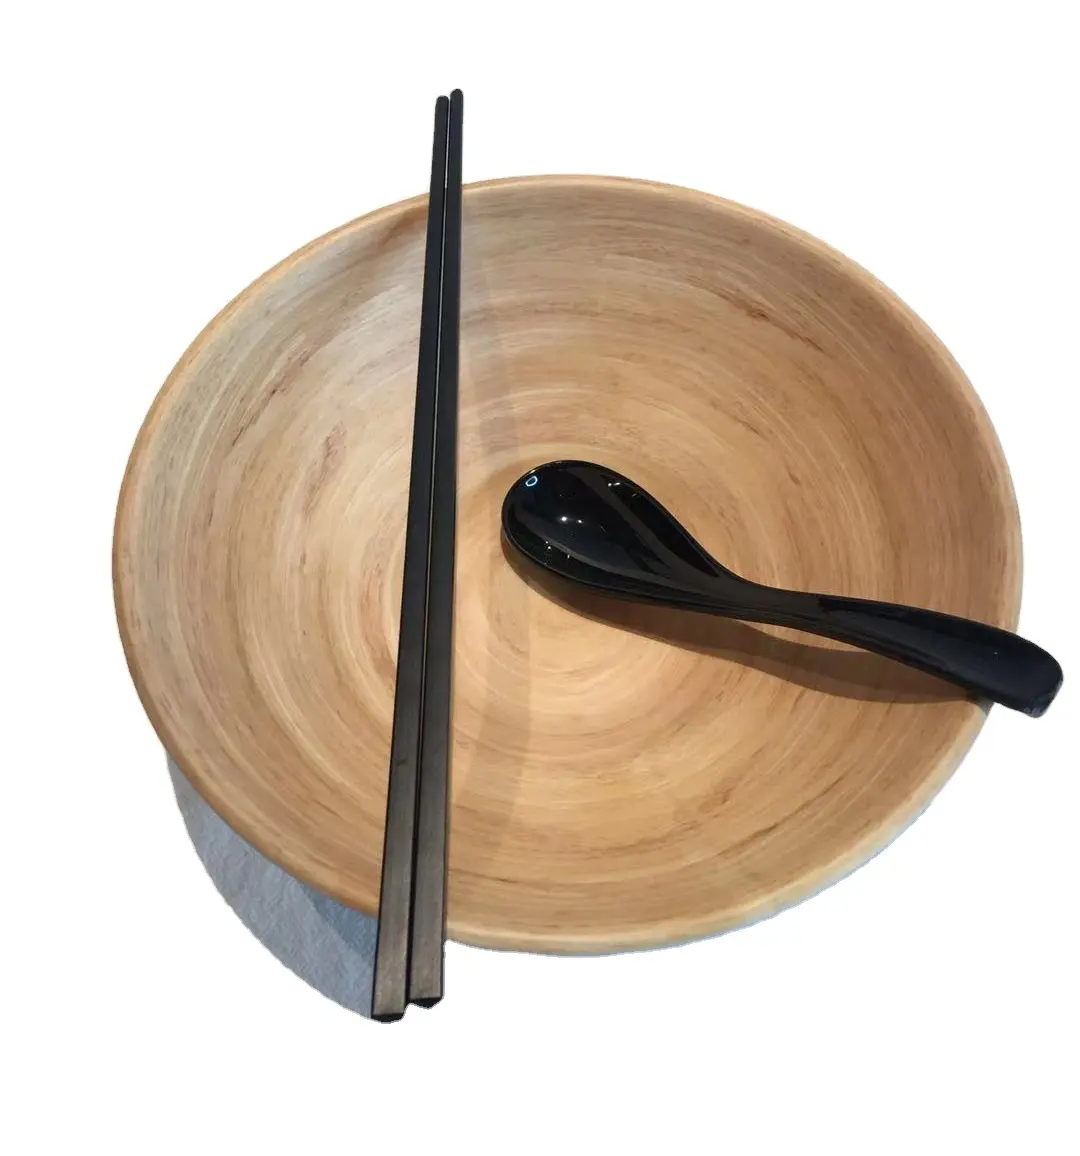 Restaurant schwarz japanische Melamin Servier schale für Großhandel Kunststoff Ramen Nudel schale